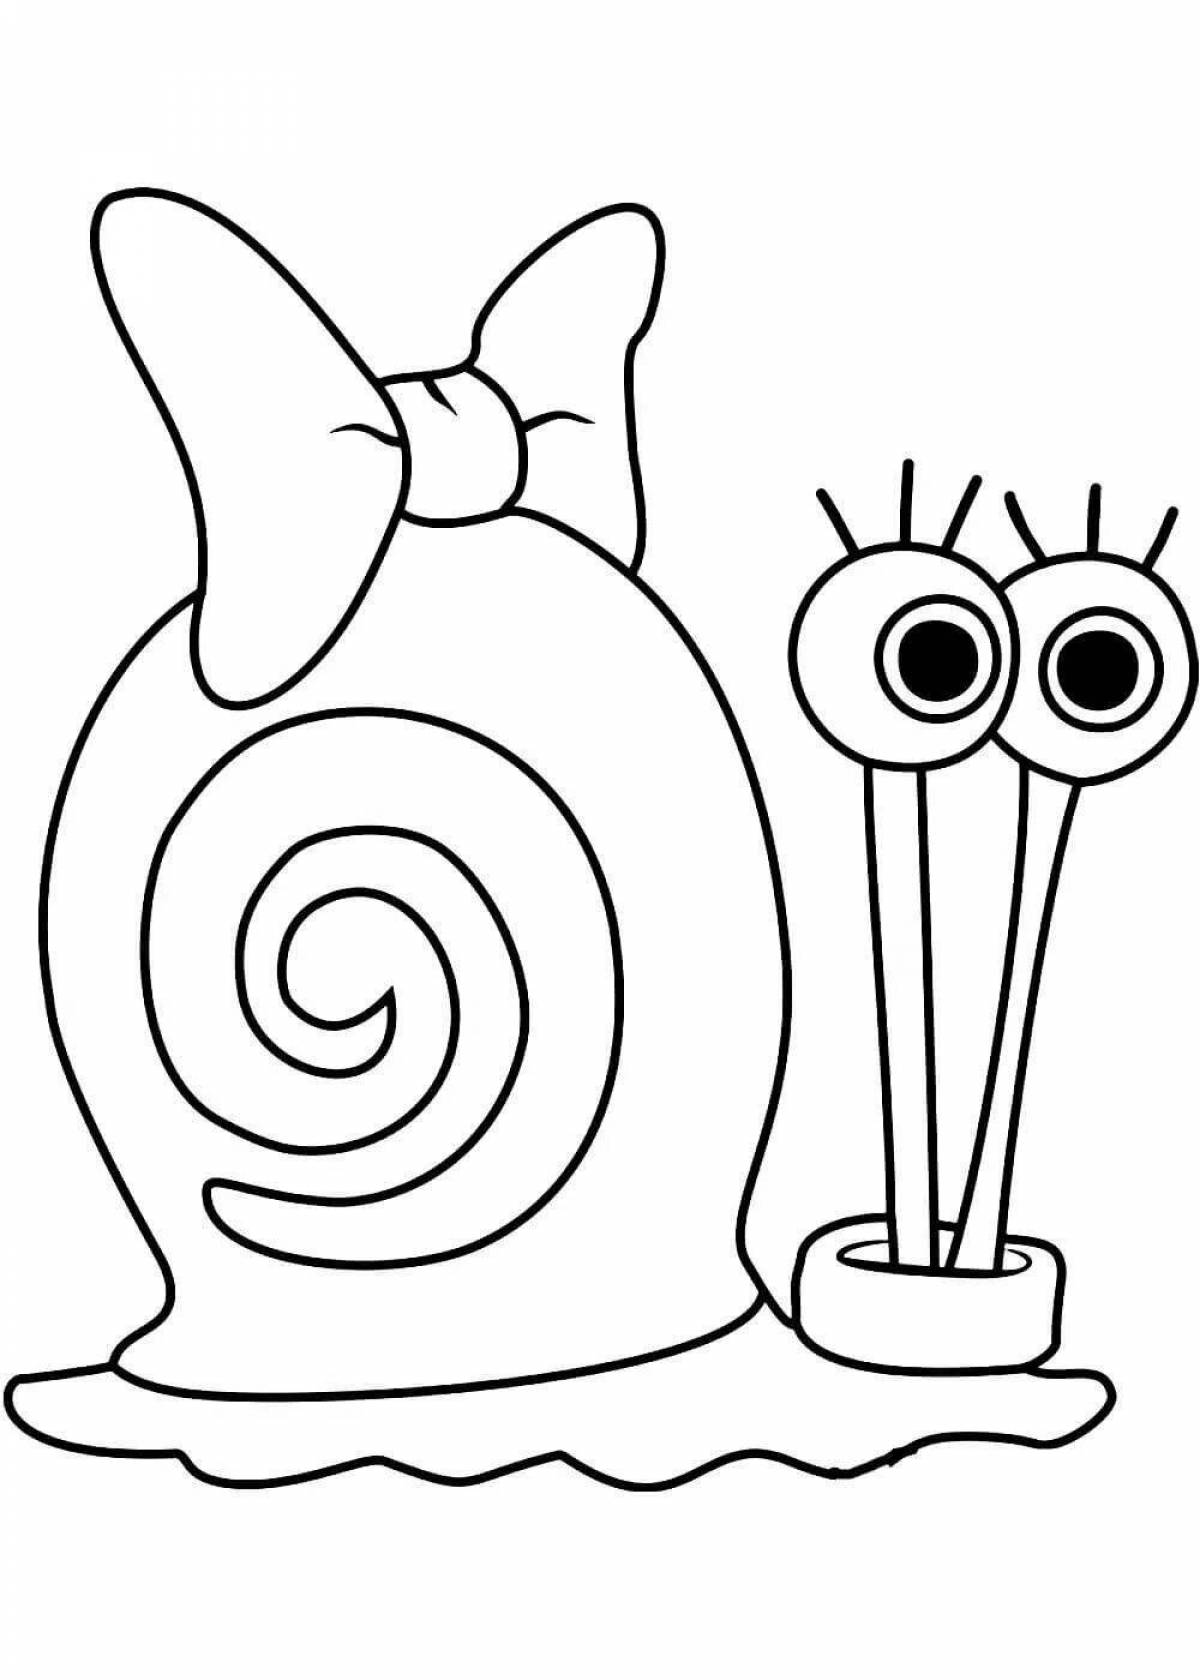 Gary's charming snail